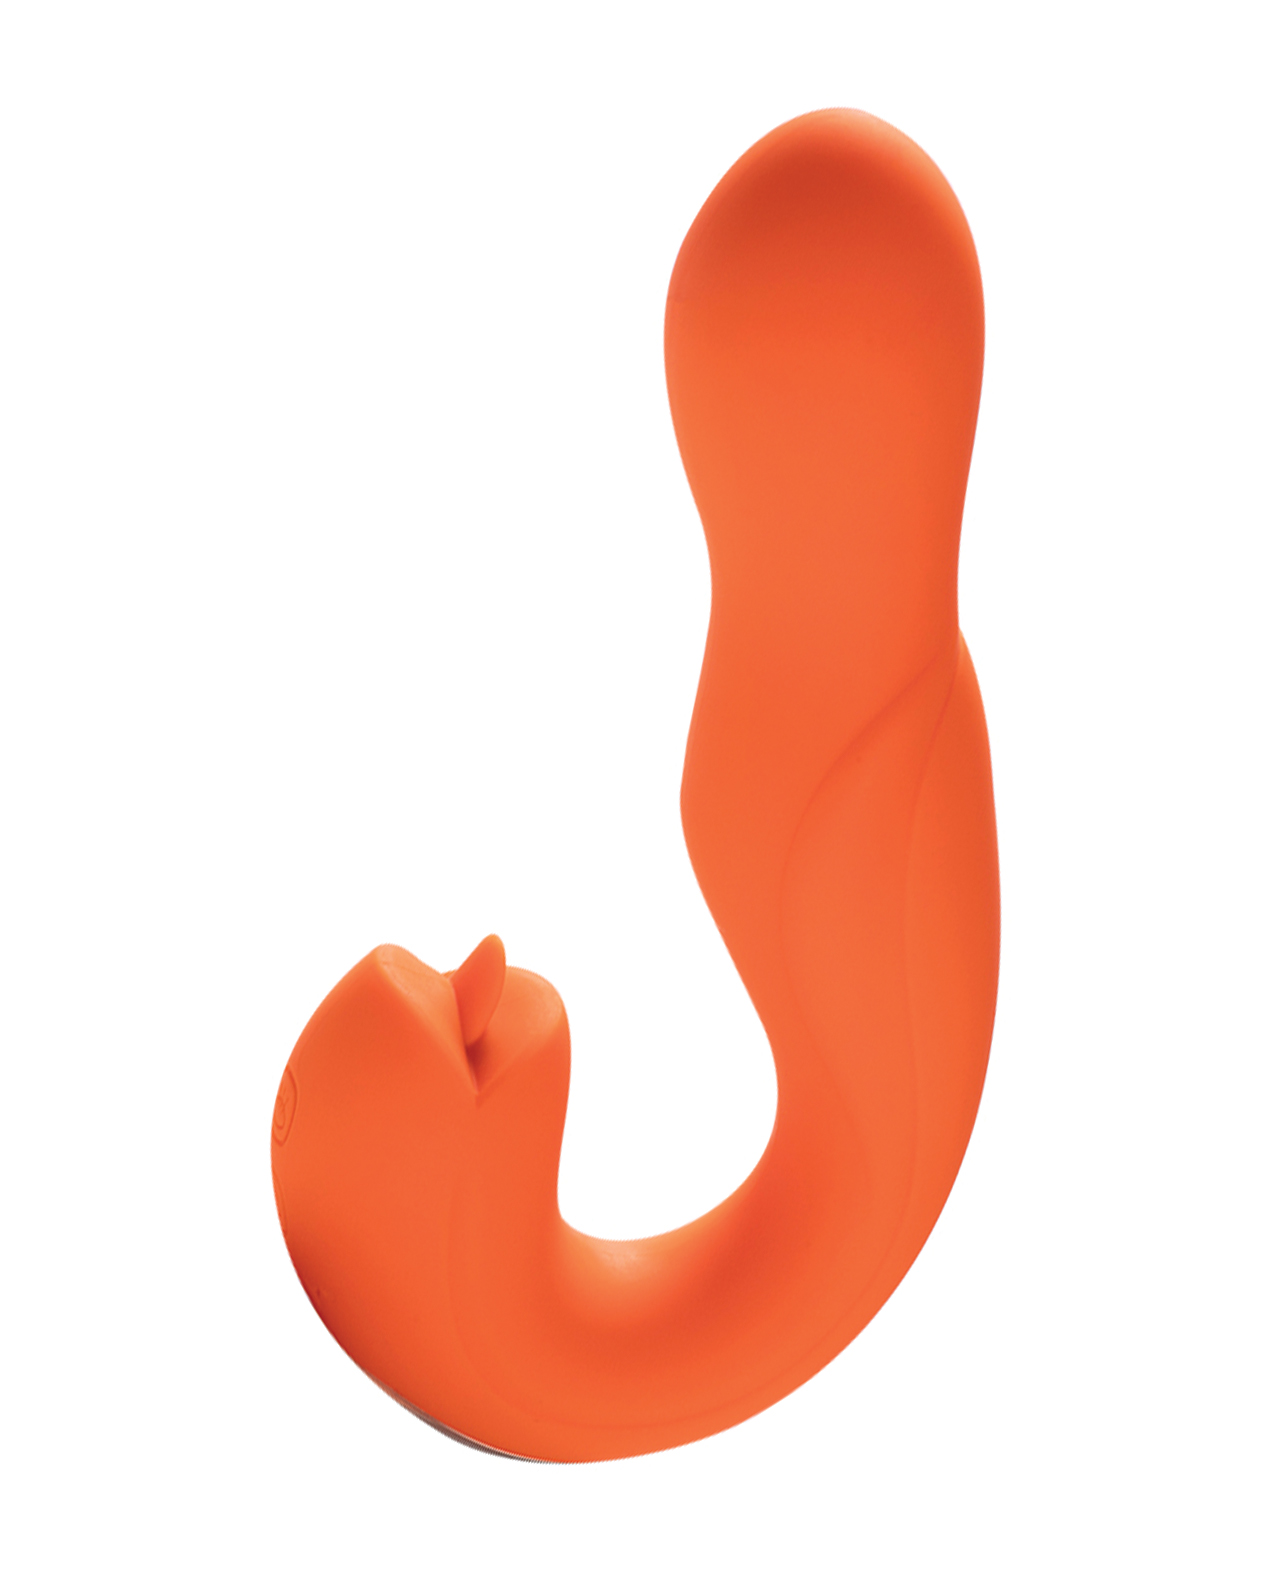 Joi Pro Rotating Head G-Spot Vibrator & Clit Licker w/Remote in Orange